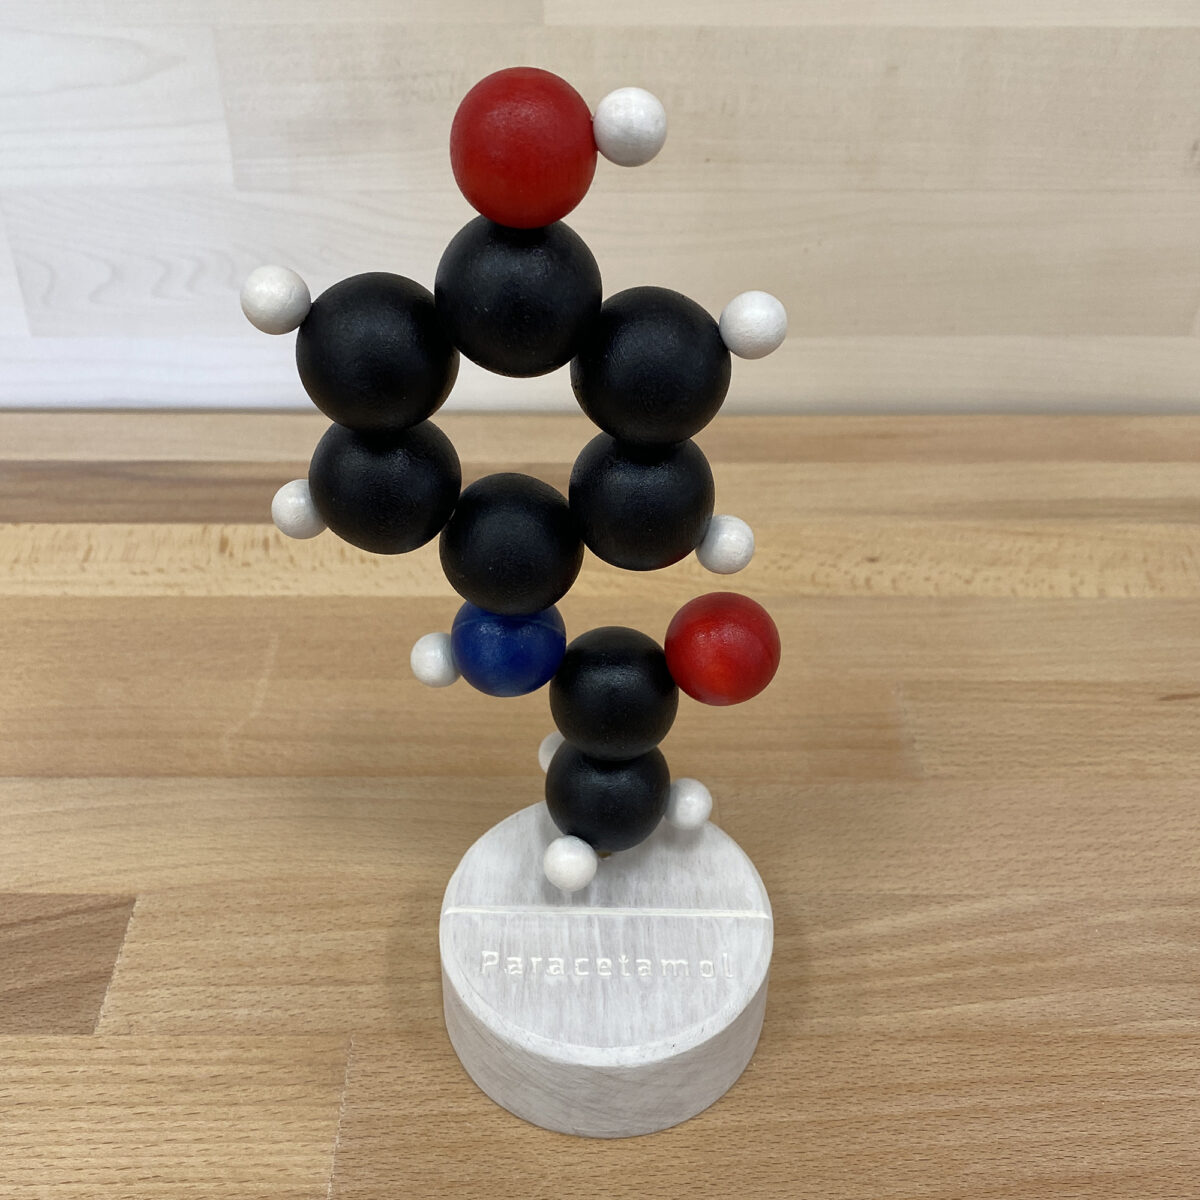 Paracetamol molecule model